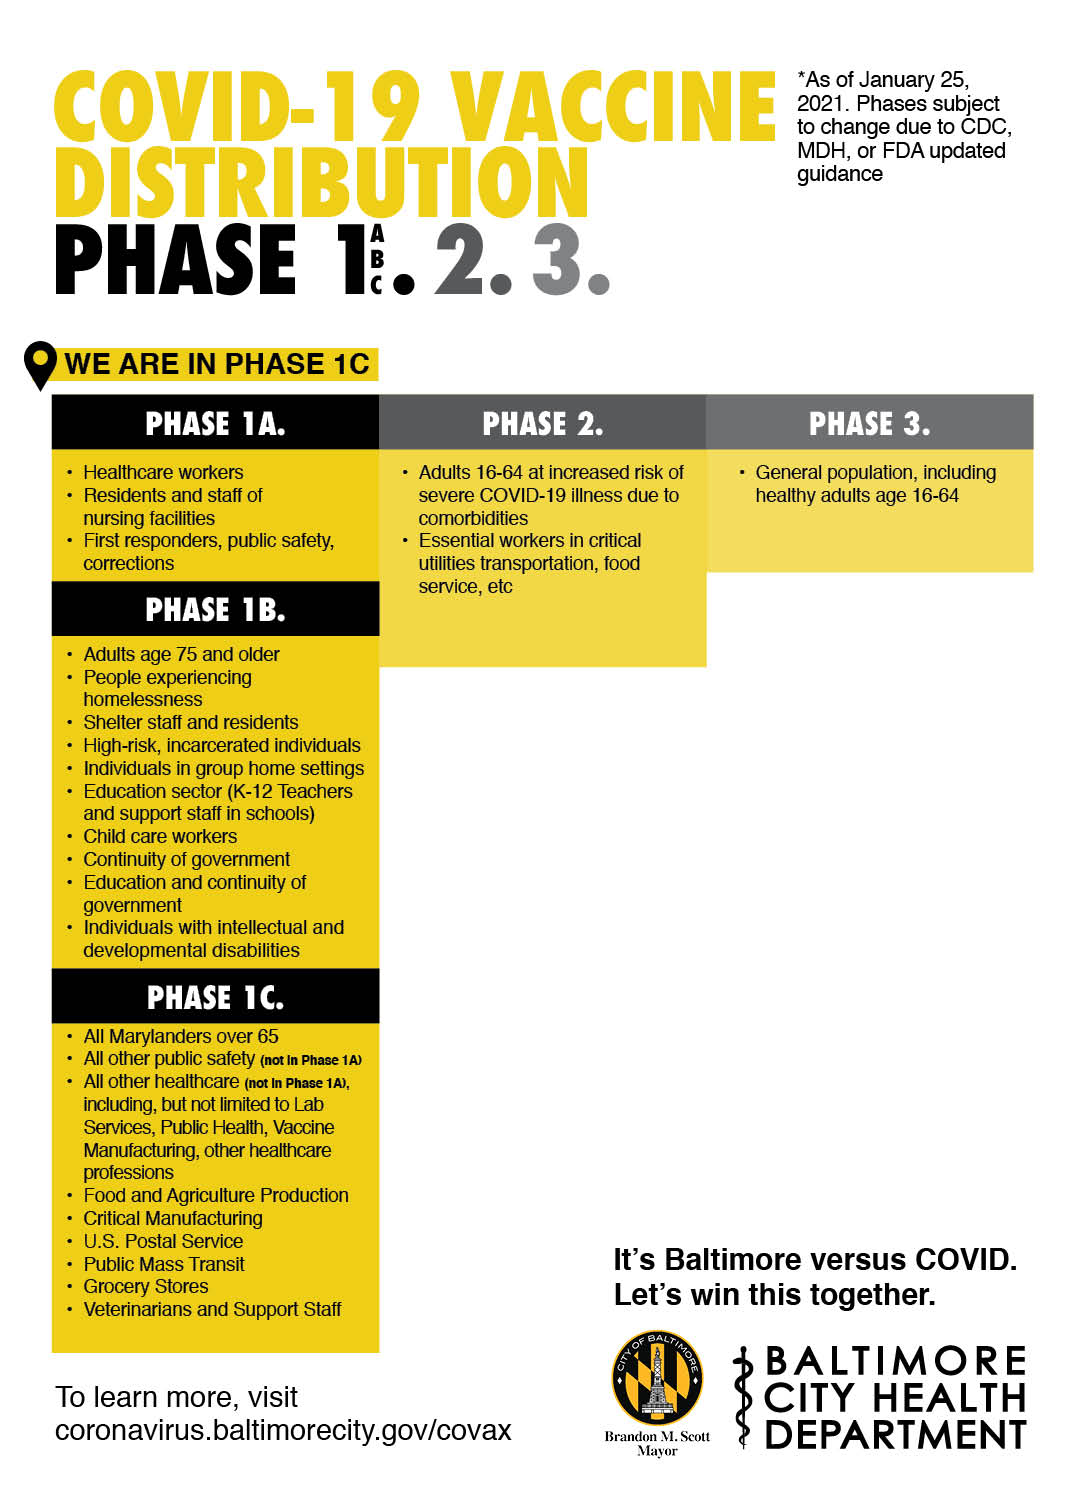 COVID-19 Phase Eligibility